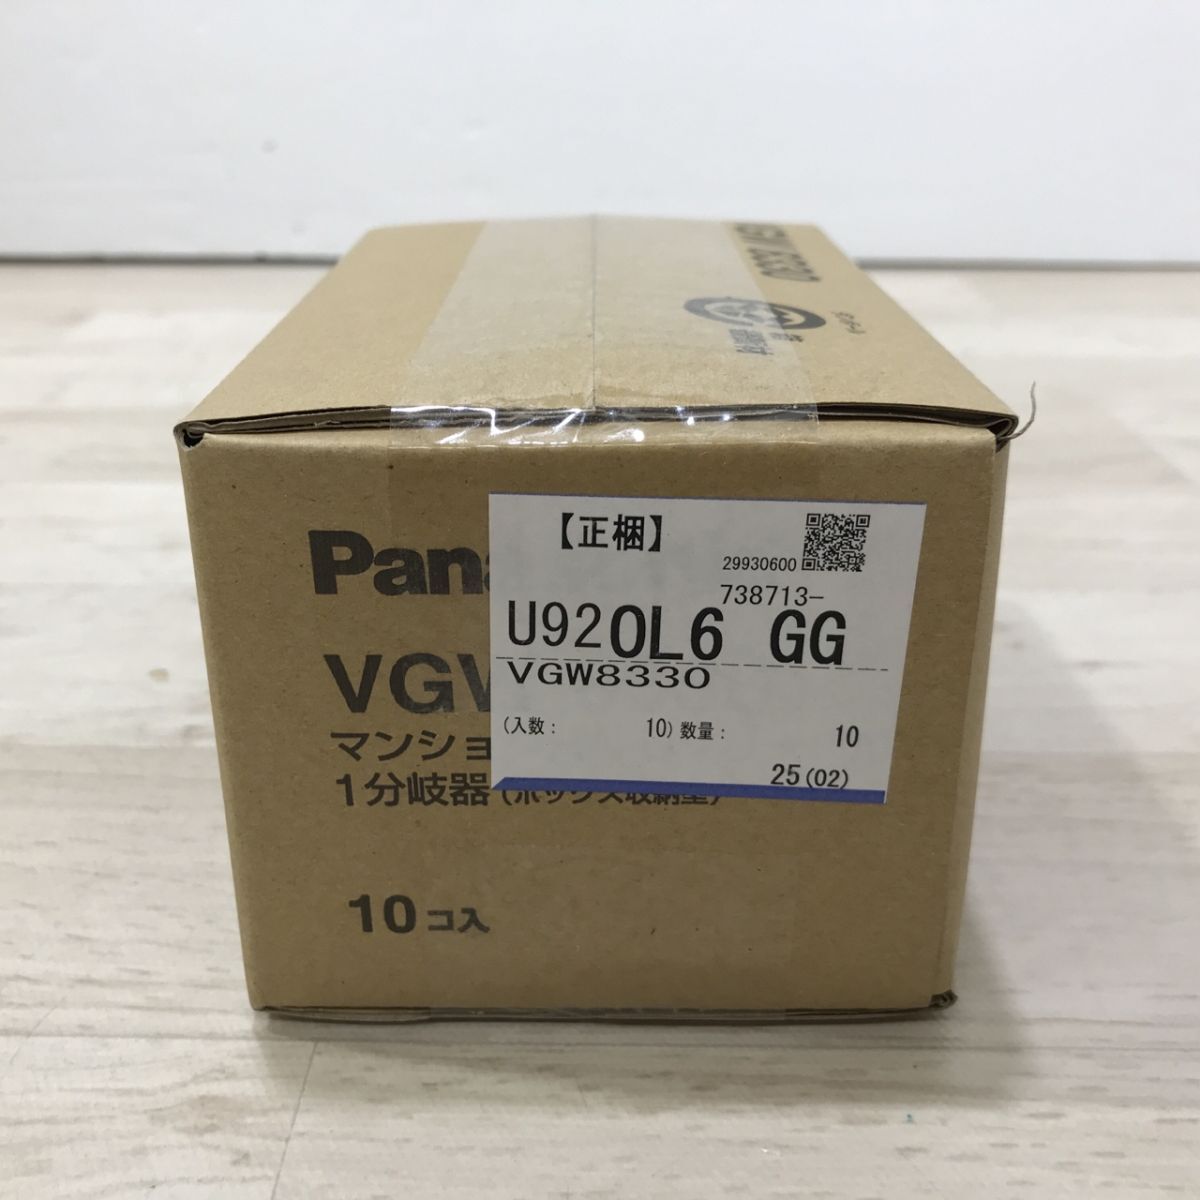 ①新品 Panasonic パナソニック VGW8330 10コ入 1箱 マンションHA Dシリーズ用 1分岐器(ボックス収納型)[C3322]_画像2